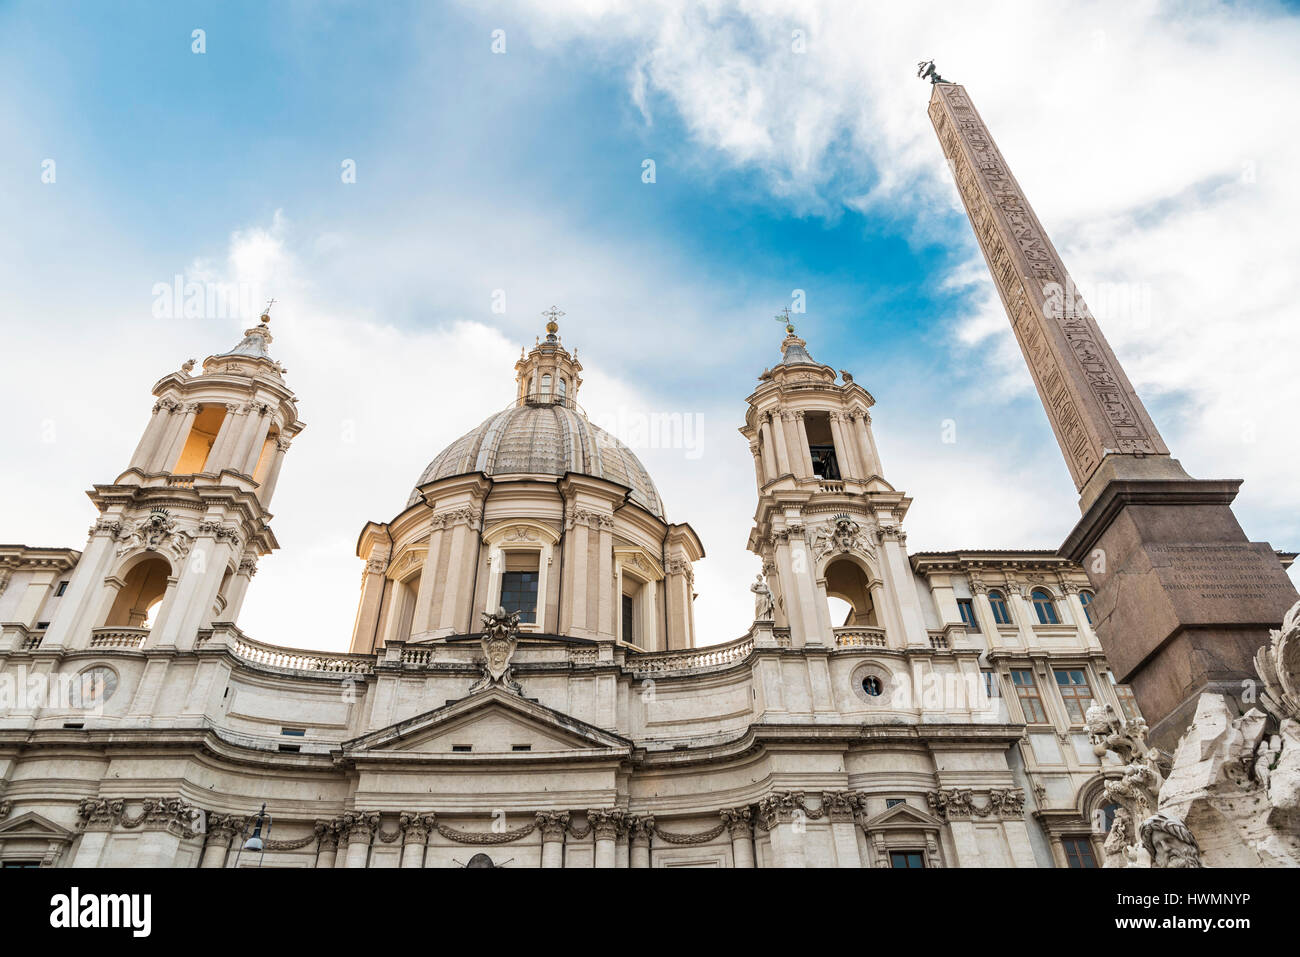 Chiesa di Santa Agnese in Agone (Sant Agnese in agonia) in Piazza Navona roma in pieno centro storico di Roma, Italia Foto Stock